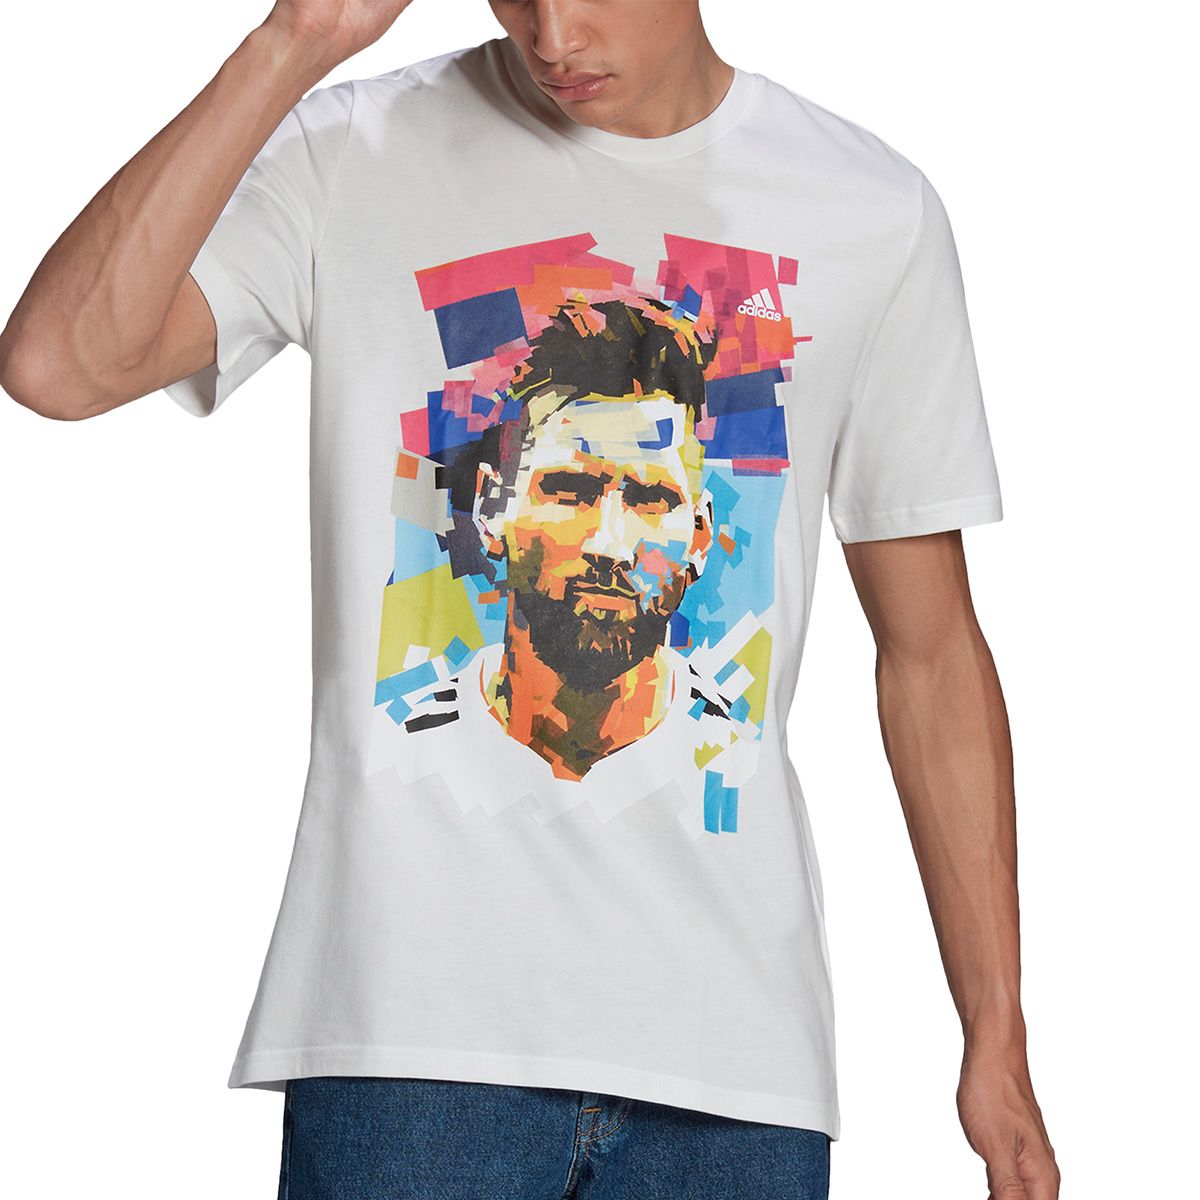 Men's Messi x Adidas White Name & Number T-Shirt Size: Medium